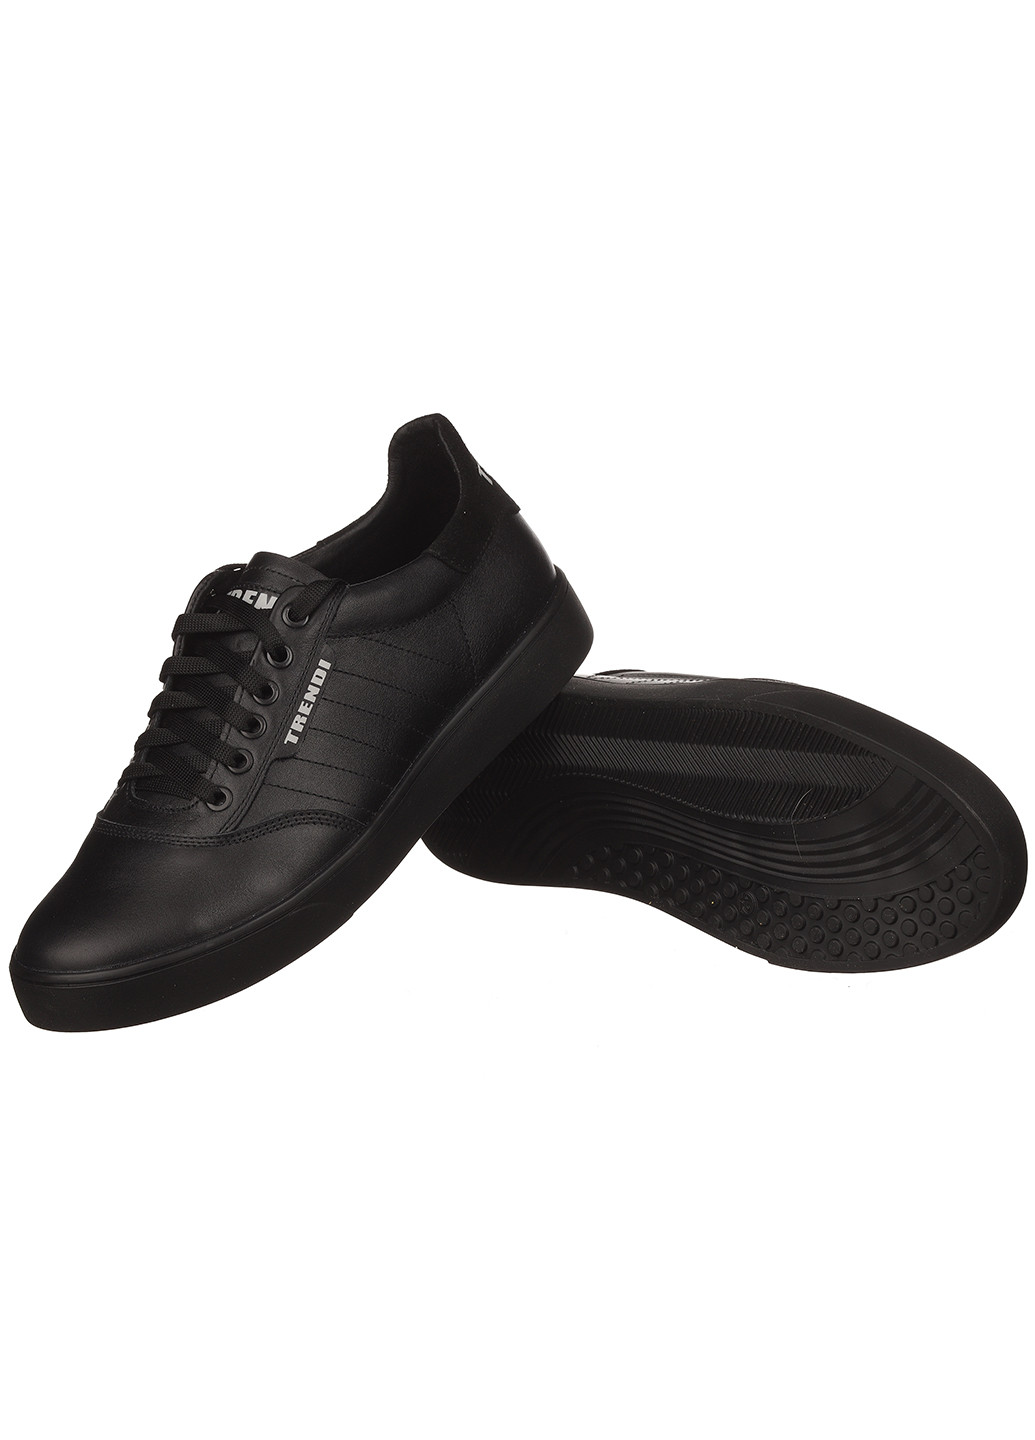 Черные демисезонные мужские кроссовки t24-1 Trendy